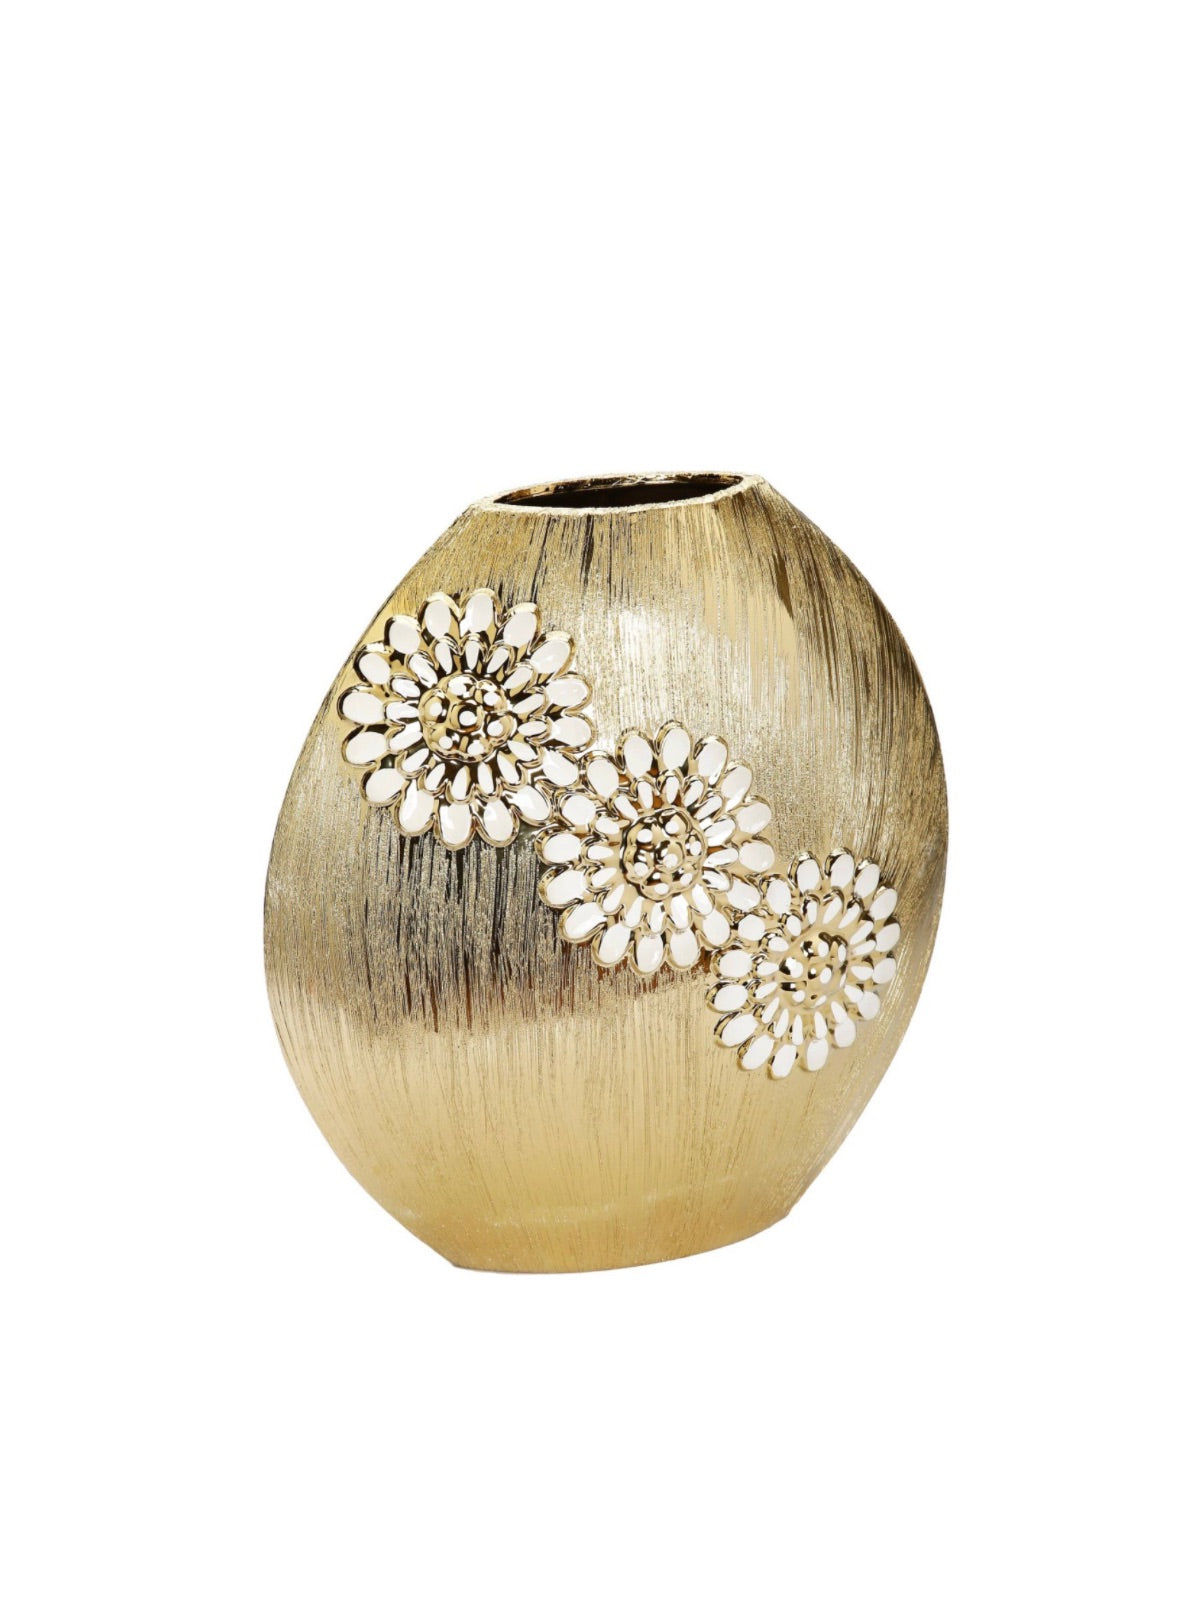 10.6H Luxury Round Matte Gold Ceramic Vase With White Textured Flower Design - KYA Home Decor. 